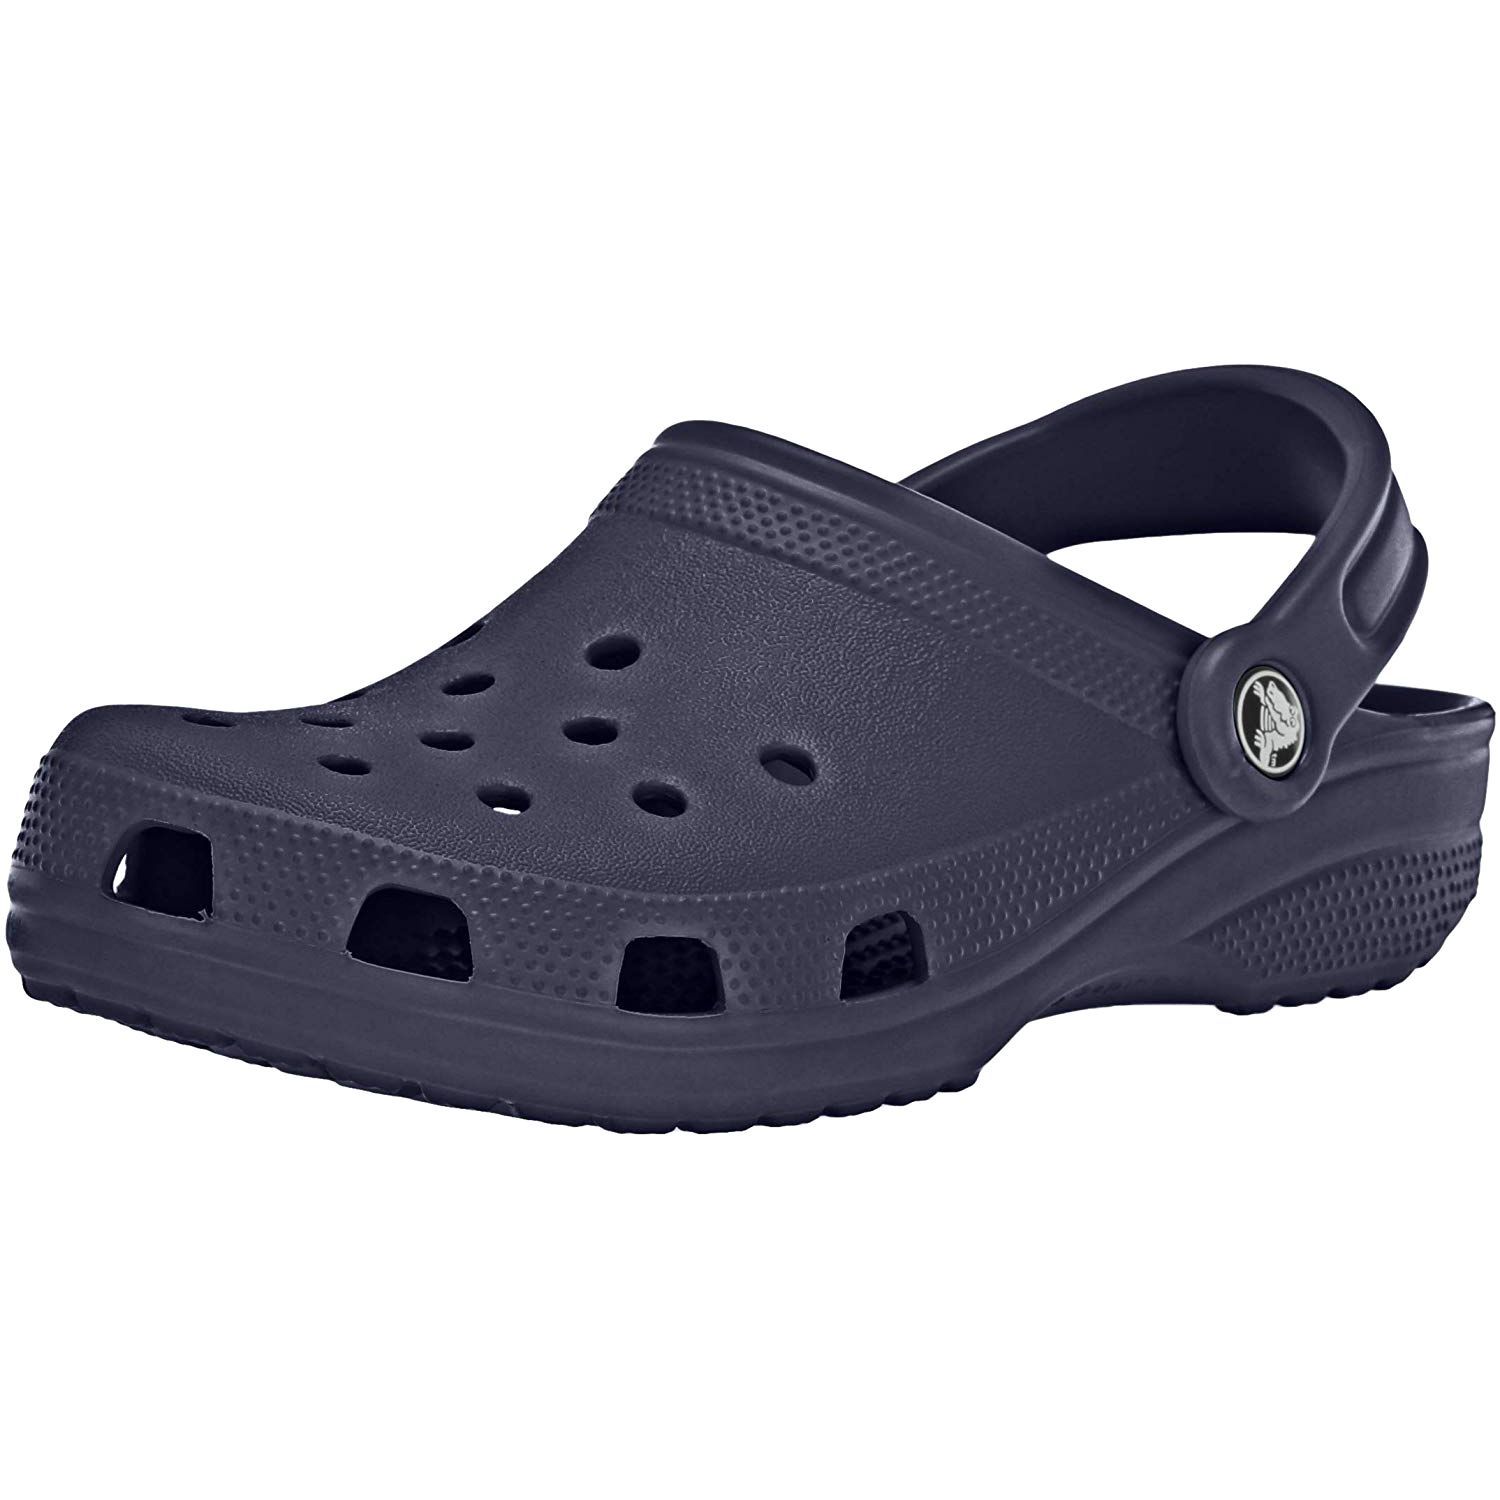 birkenstock crocs amazon